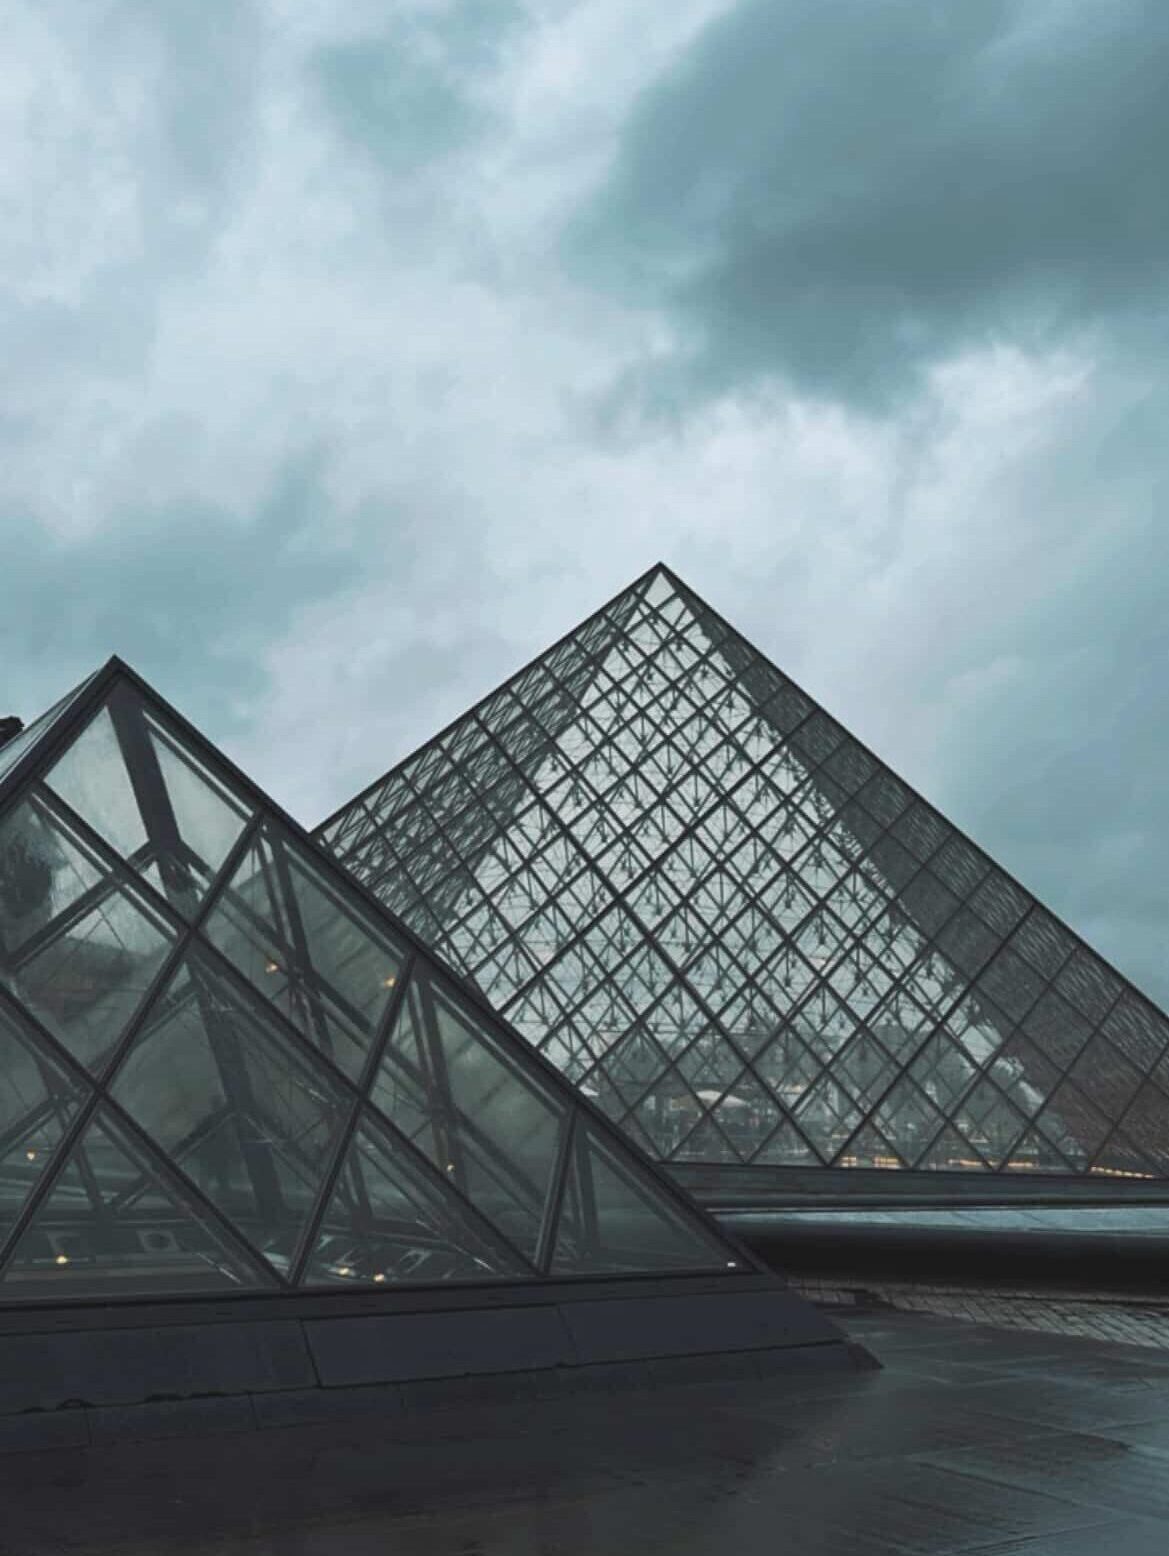 The maginificient Louvre Museum, Paris